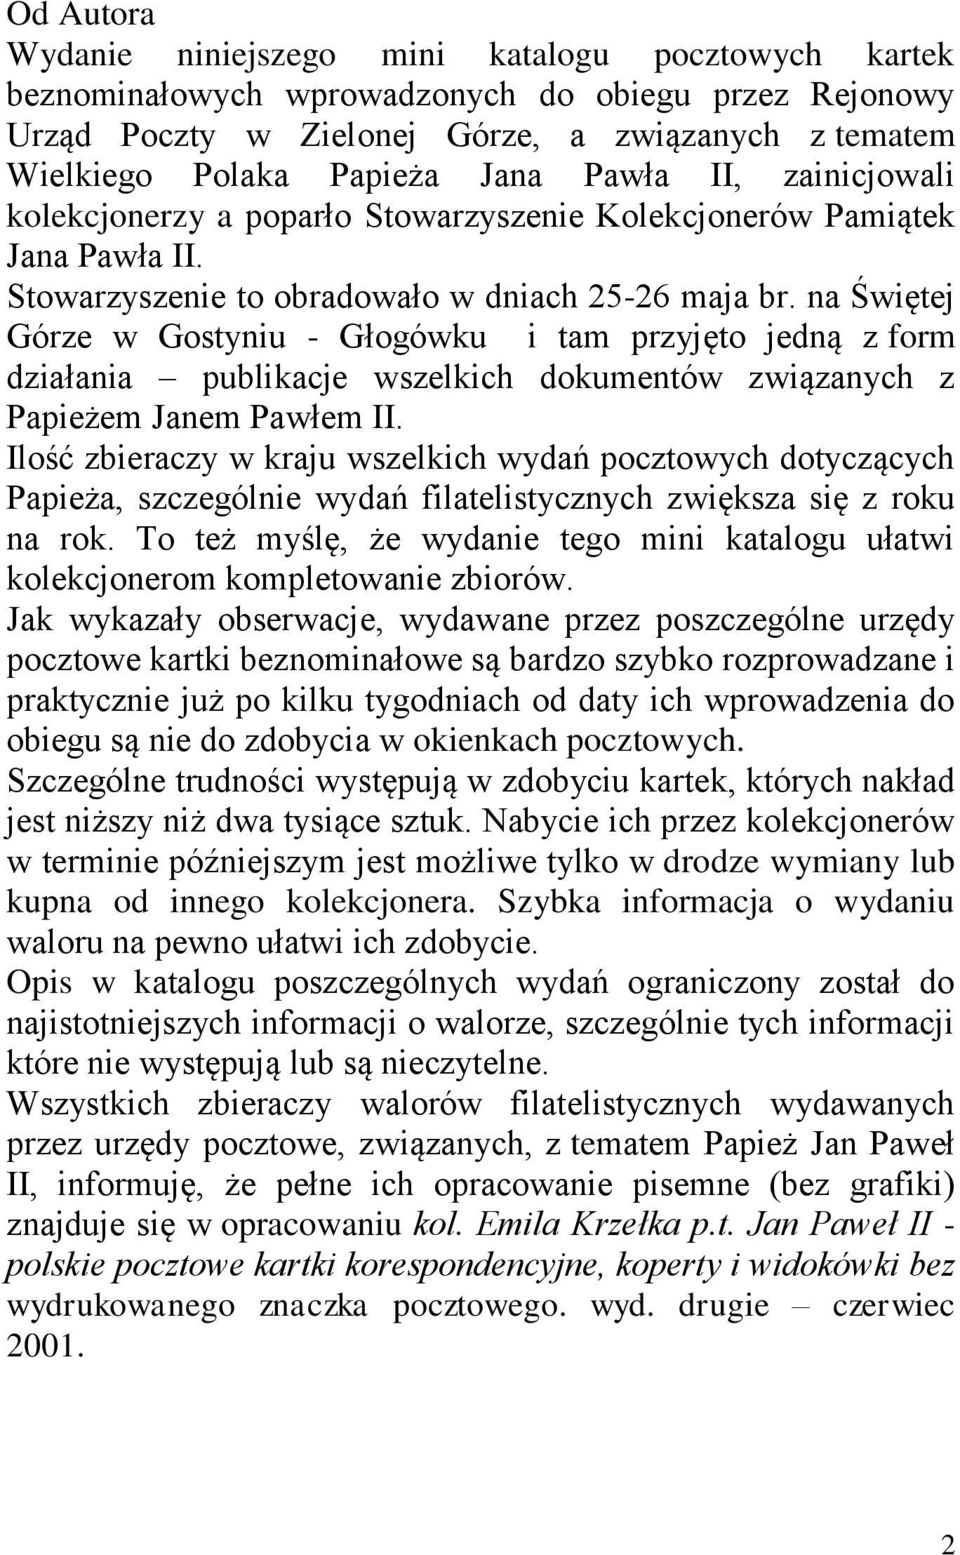 na Świętej Górze w Gostyniu - Głogówku i tam przyjęto jedną z form działania publikacje wszelkich dokumentów związanych z Papieżem Janem Pawłem II.